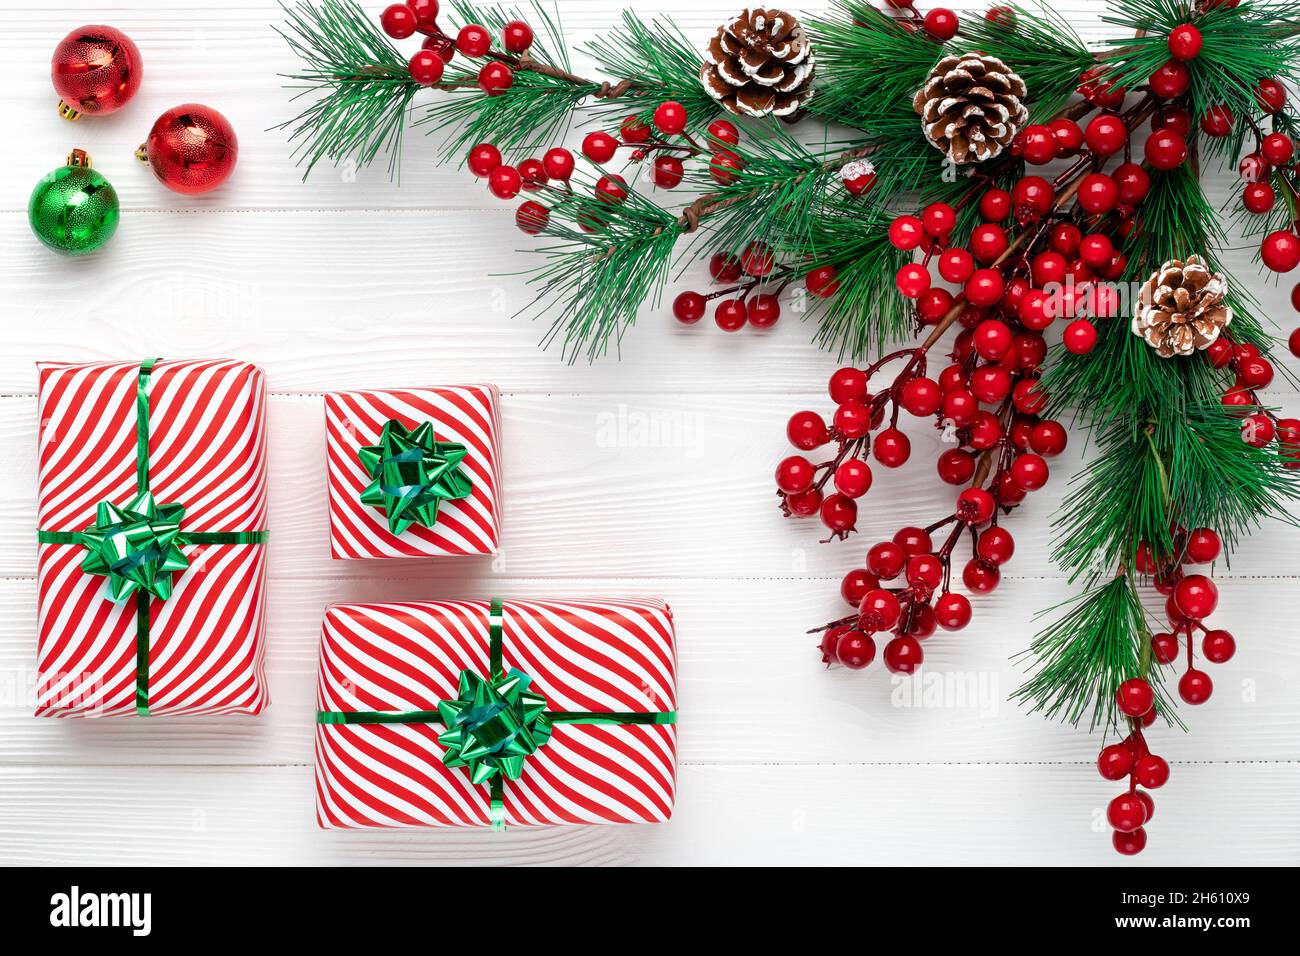 Carte de vœux de Noël avec couronne de branches de pin et cadeaux dans l'emballage.Fond de nouvel an avec branches de sapin, cônes et baies de houx rouges.Festi Banque D'Images